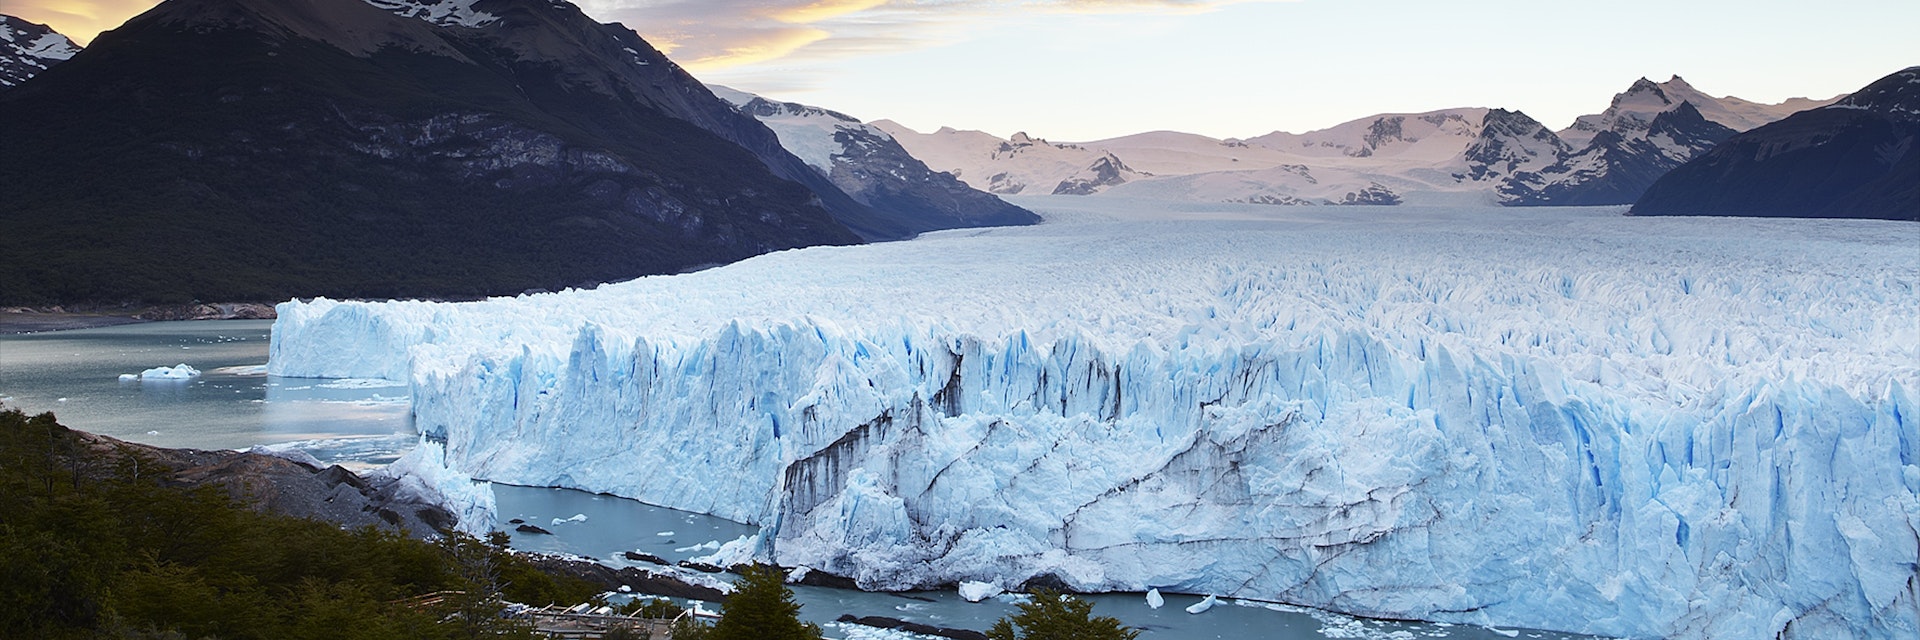 Perito Moreno glacier at sunset.